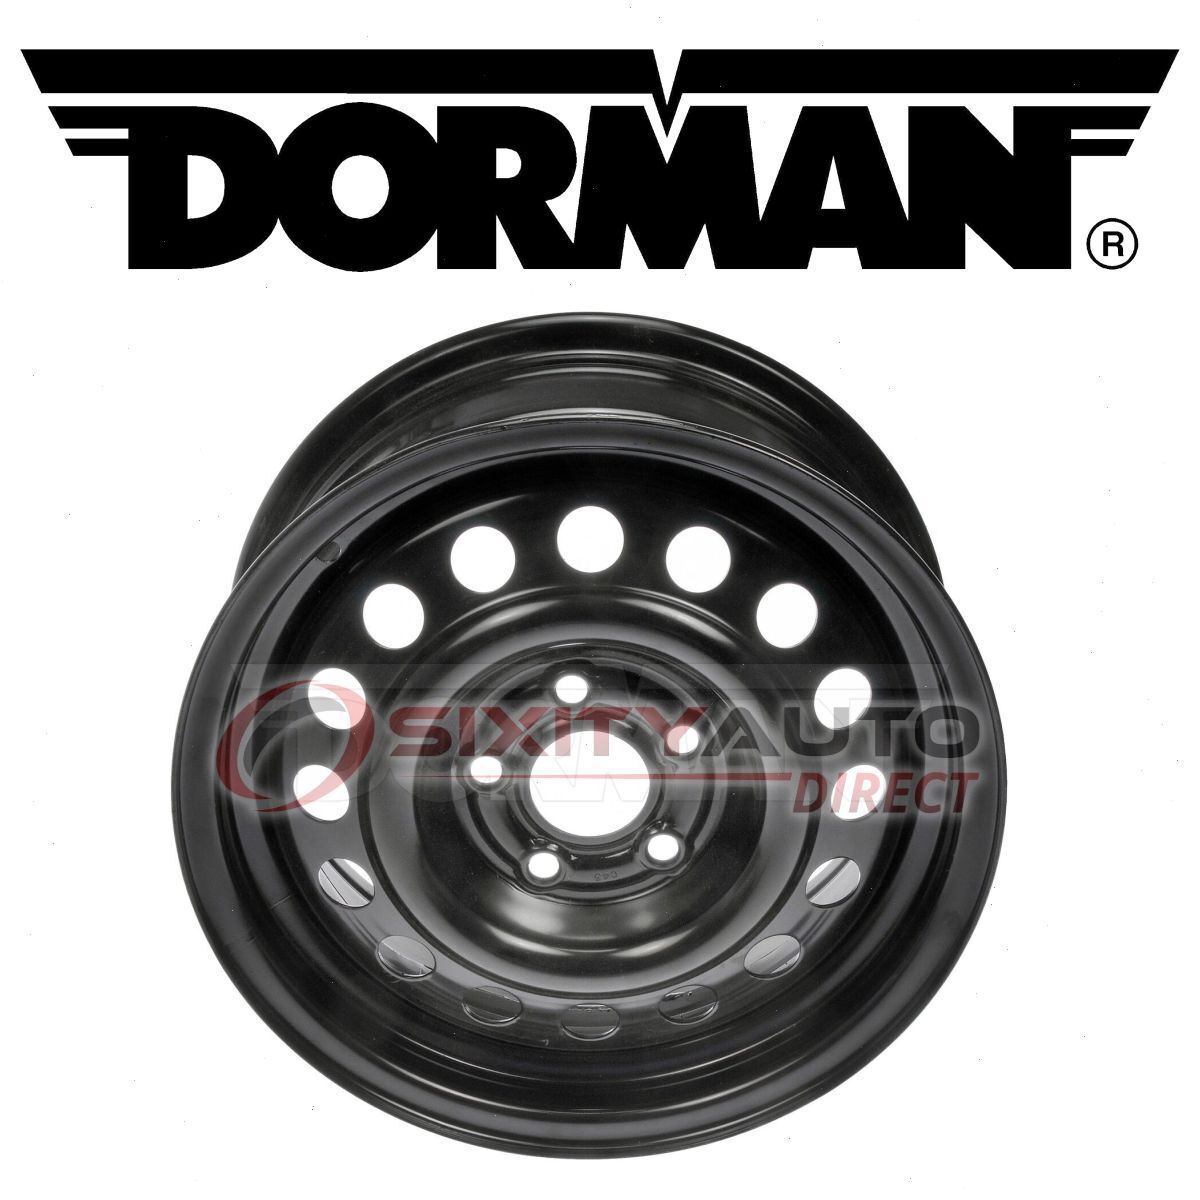 Dorman Wheel for 1989-1991 Oldsmobile Cutlass Calais Tire  bo